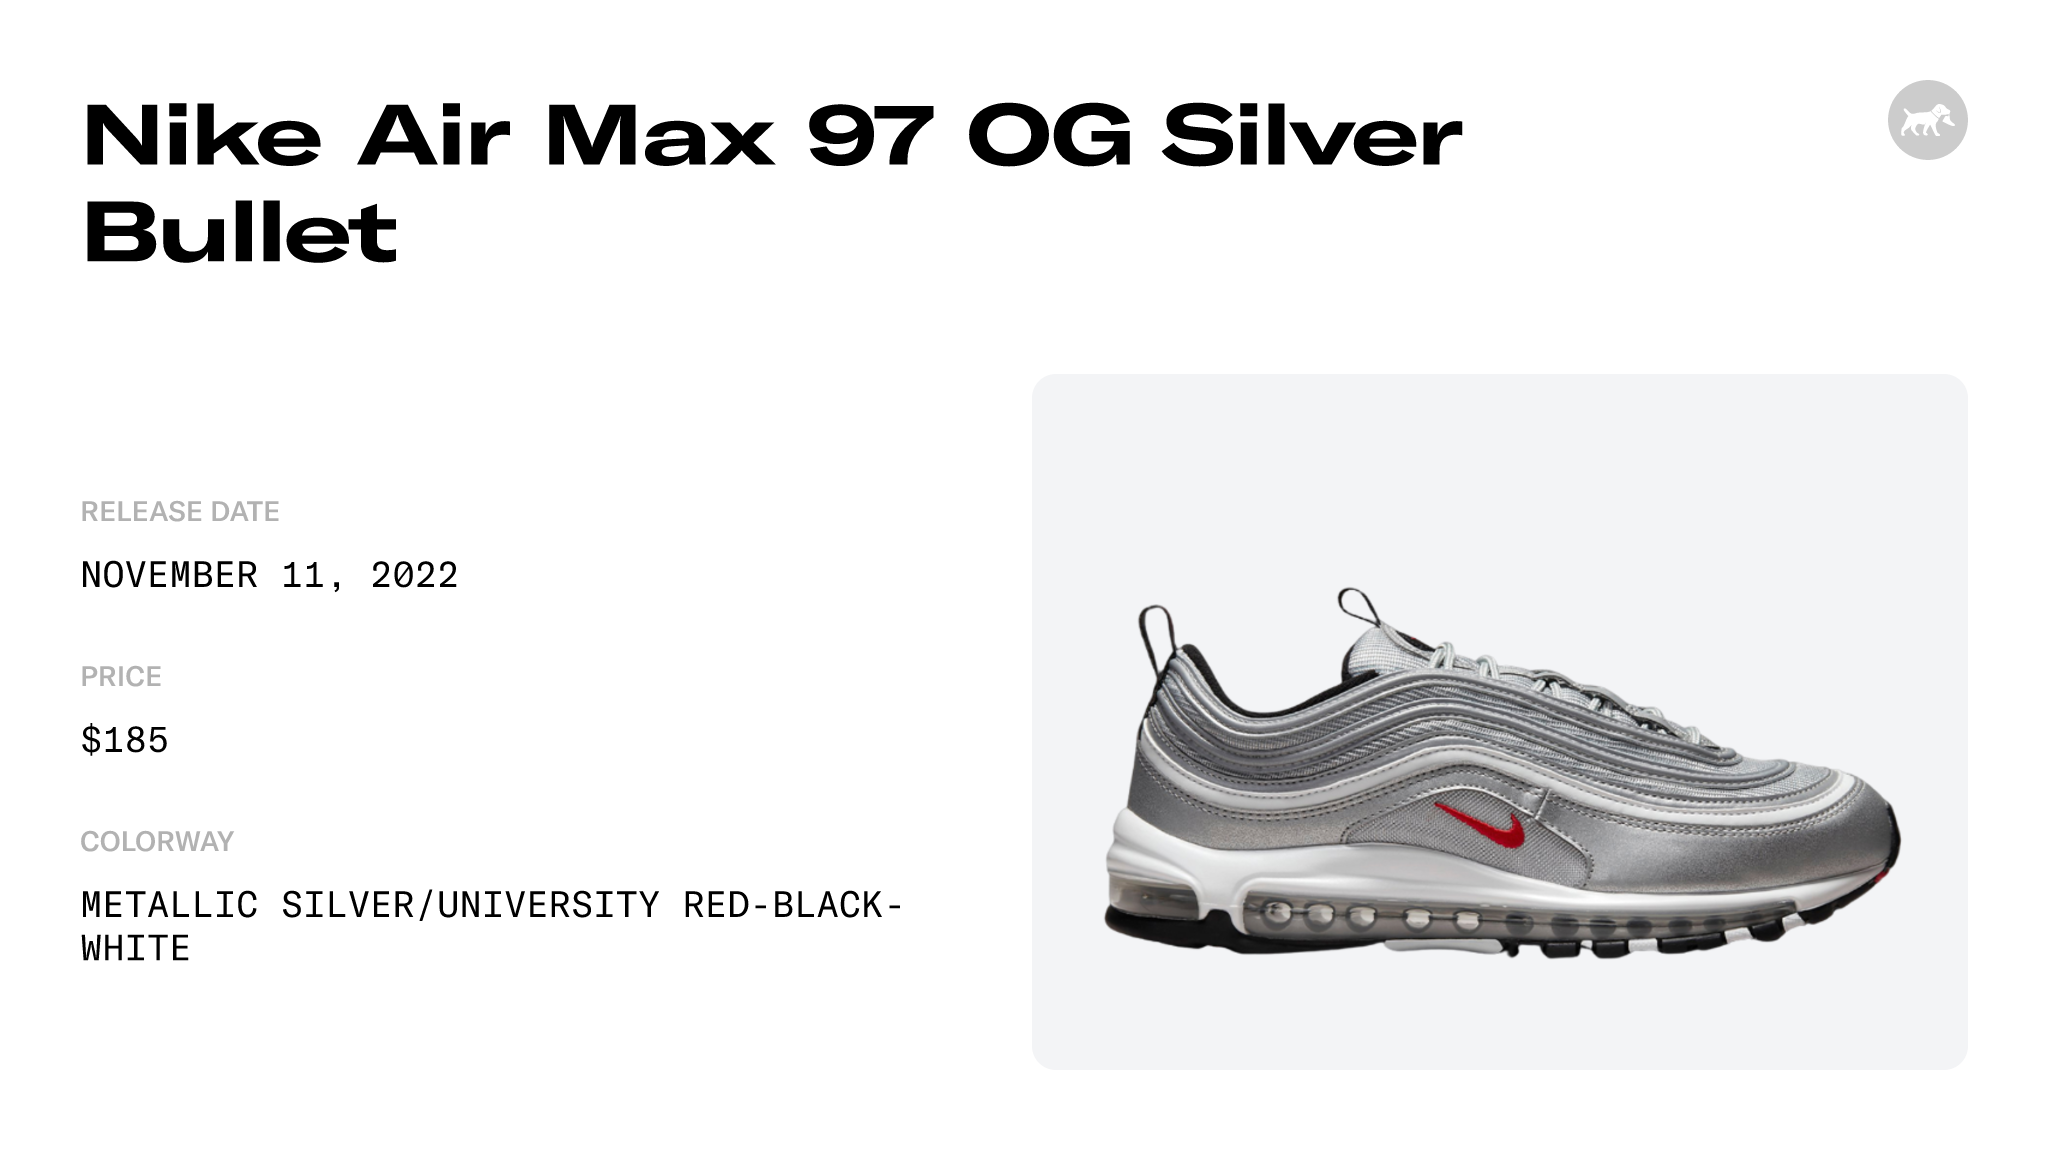 Nike Air Max 97 Silver Bullet 2022 DM0028-002 